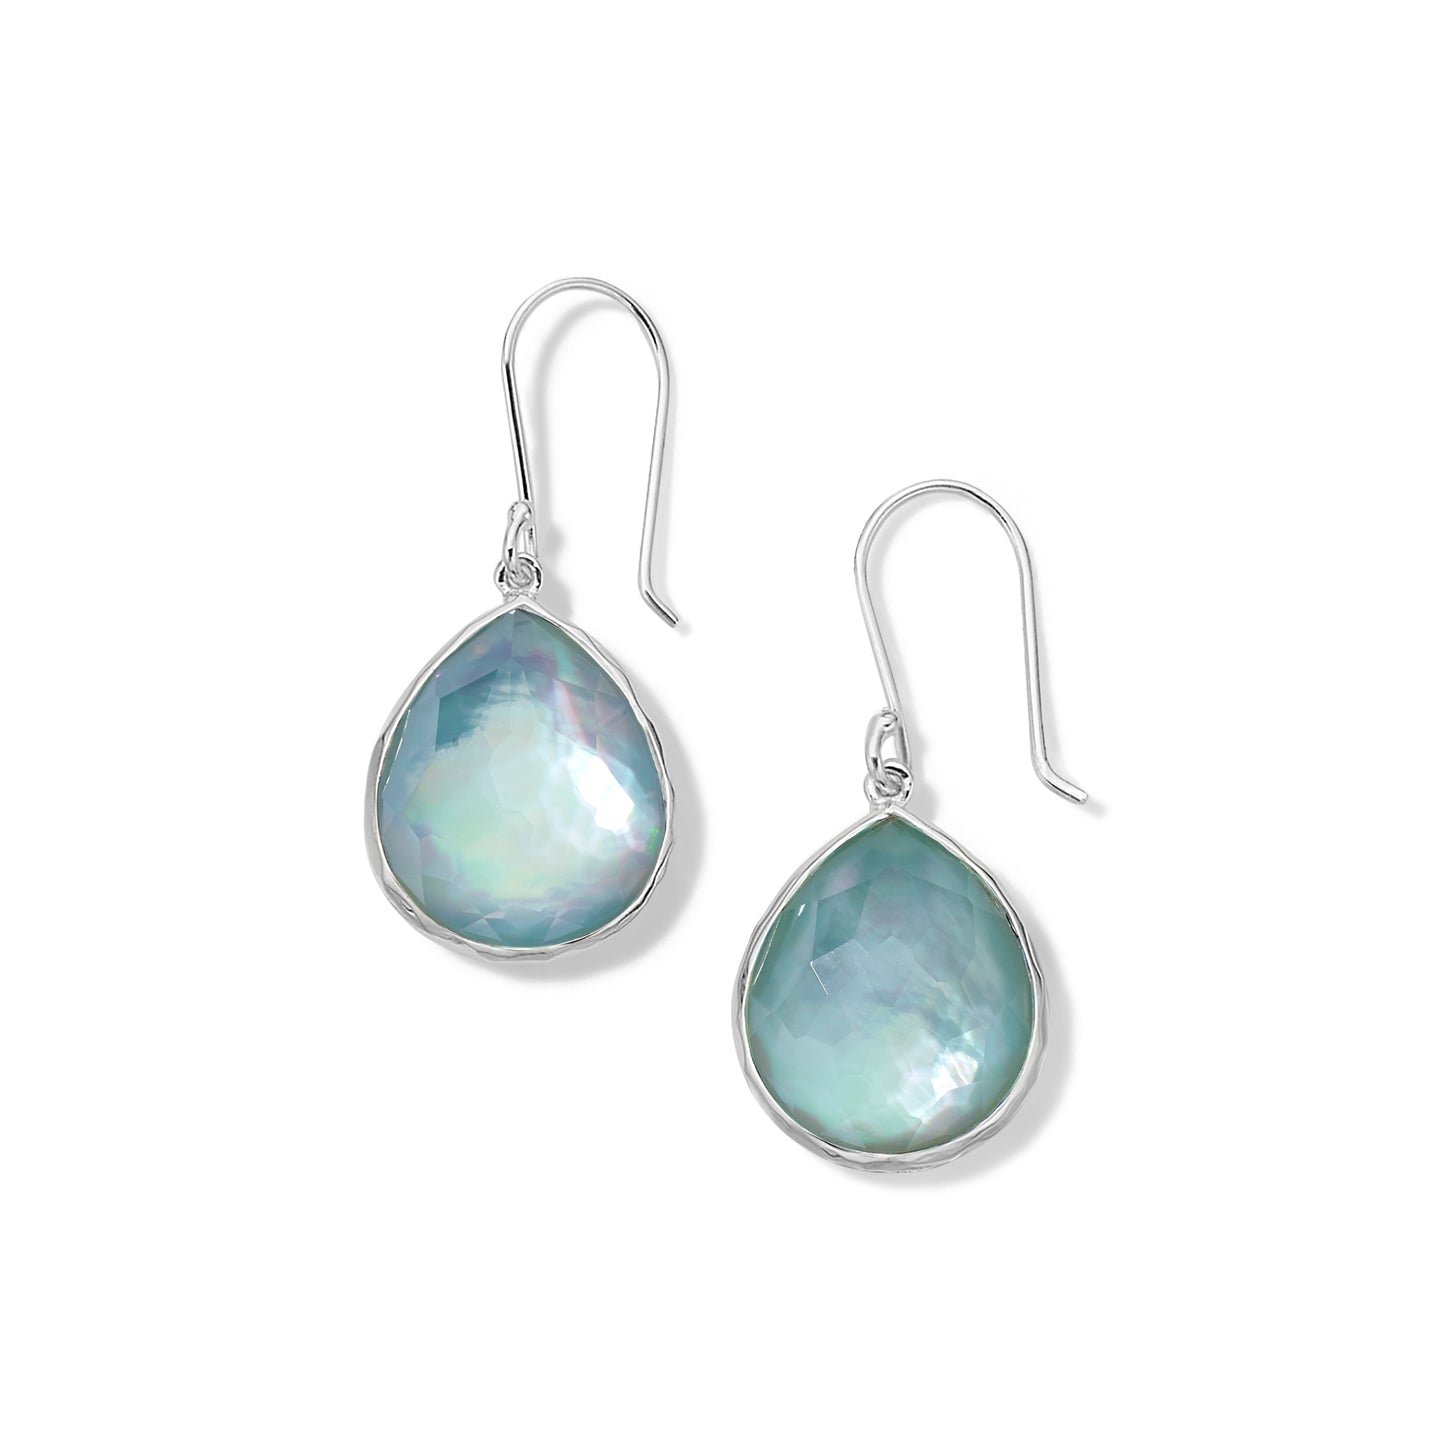 IPPOLITA Rock Candy Blue Gemstone Teardrop Earrings in Sterling Silver